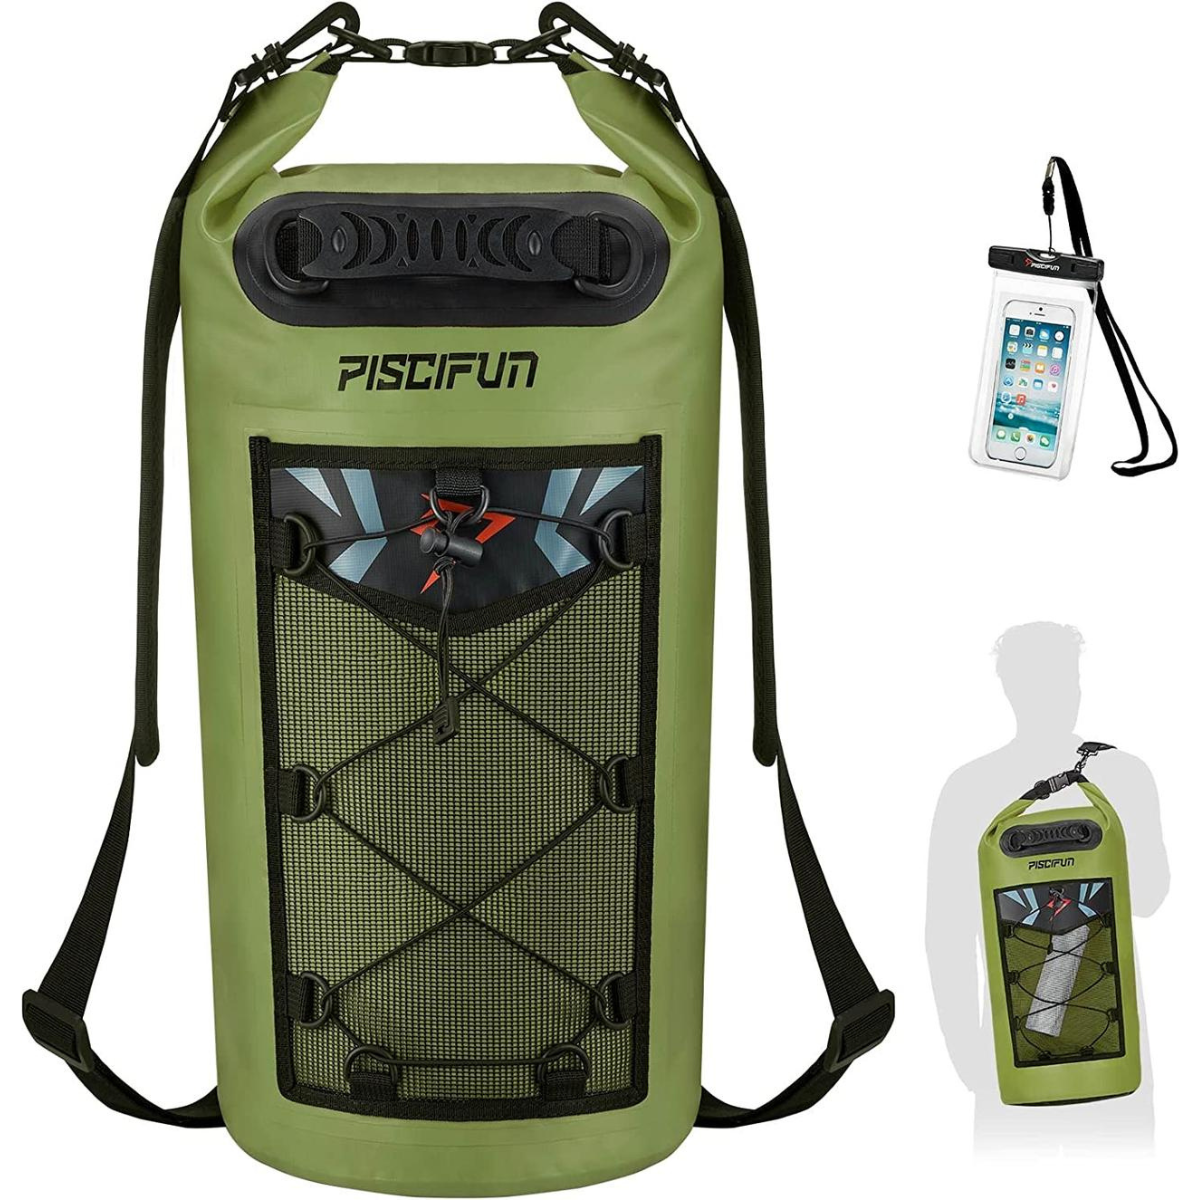 Piscifun Waterproof Dry Bag - Best Waterproof Dry Bag